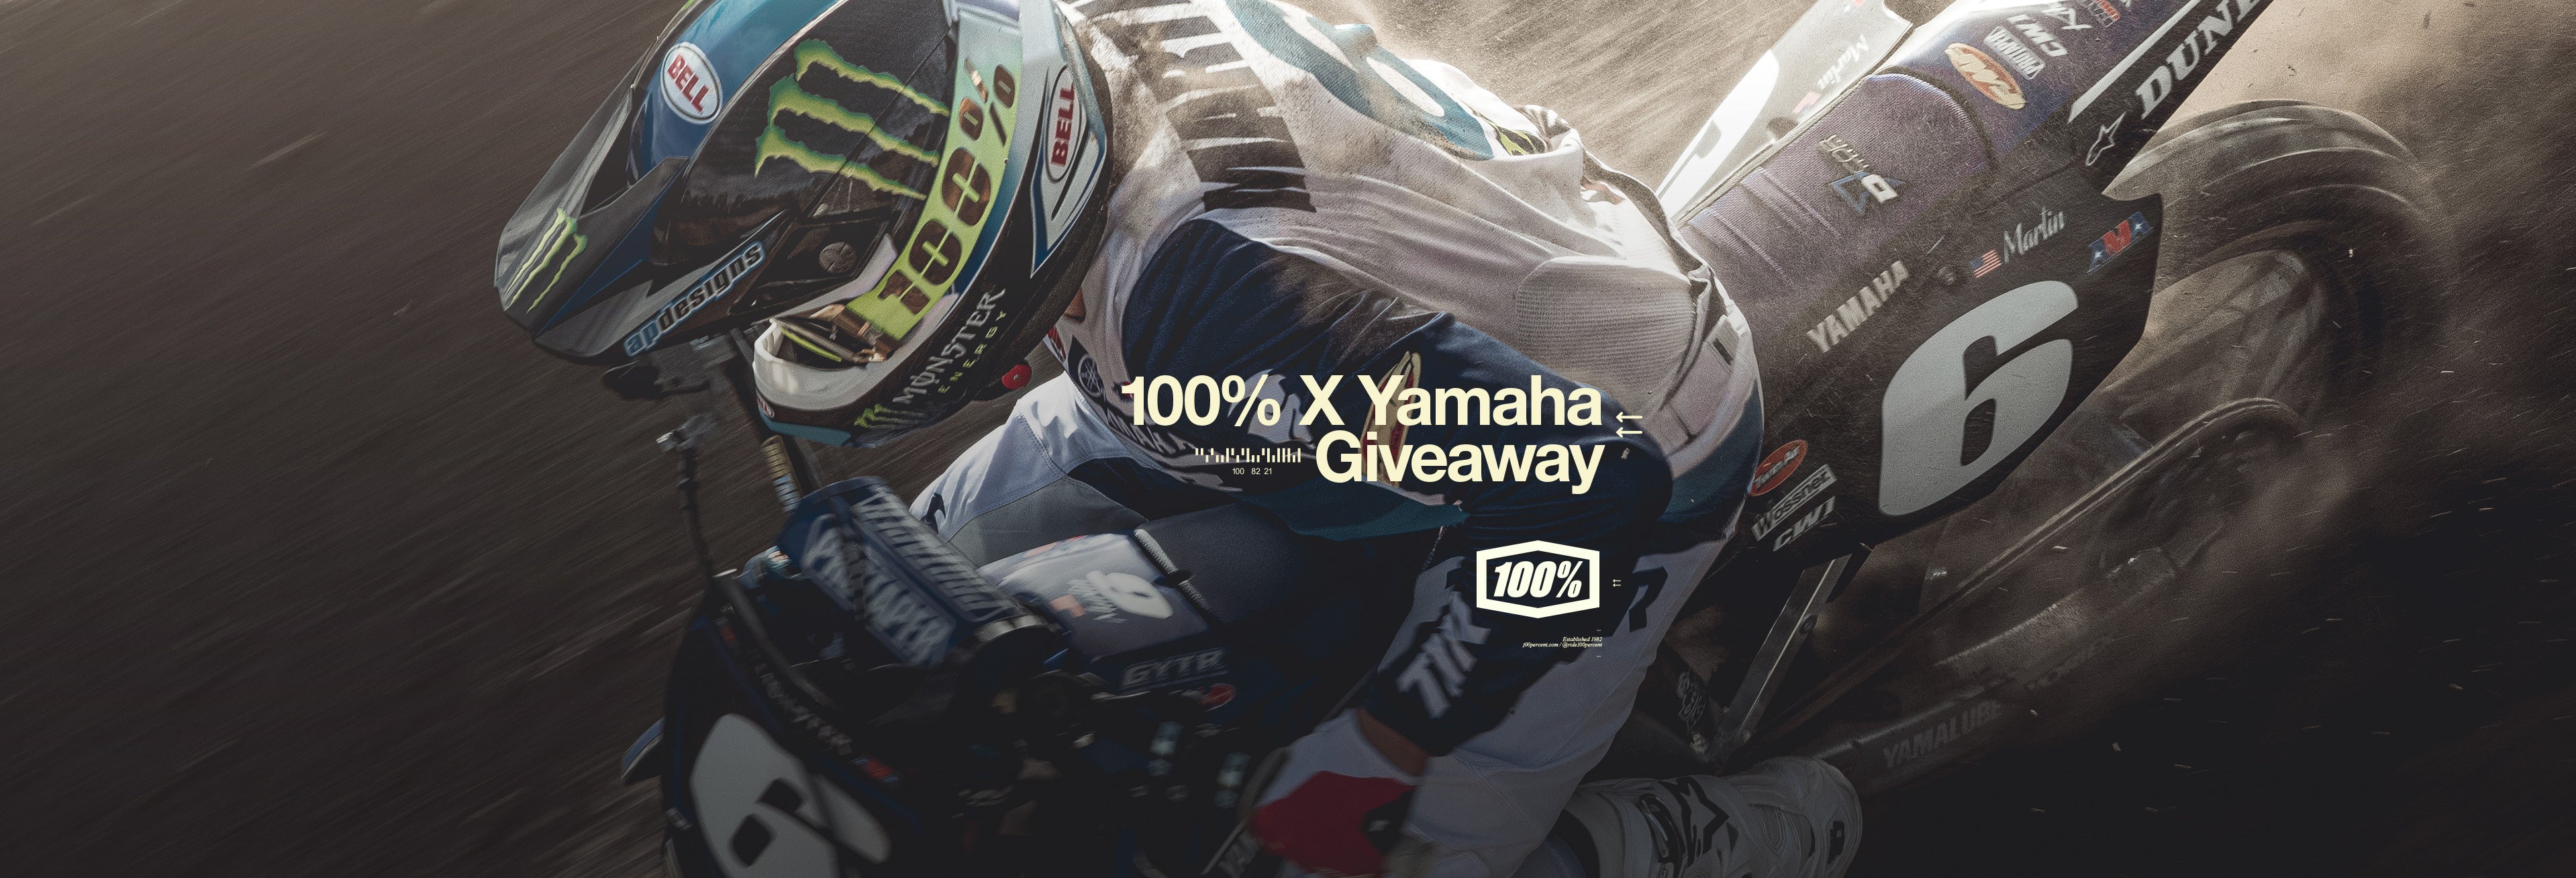 Enter To Win Star Racing Yamaha Sweepstakes